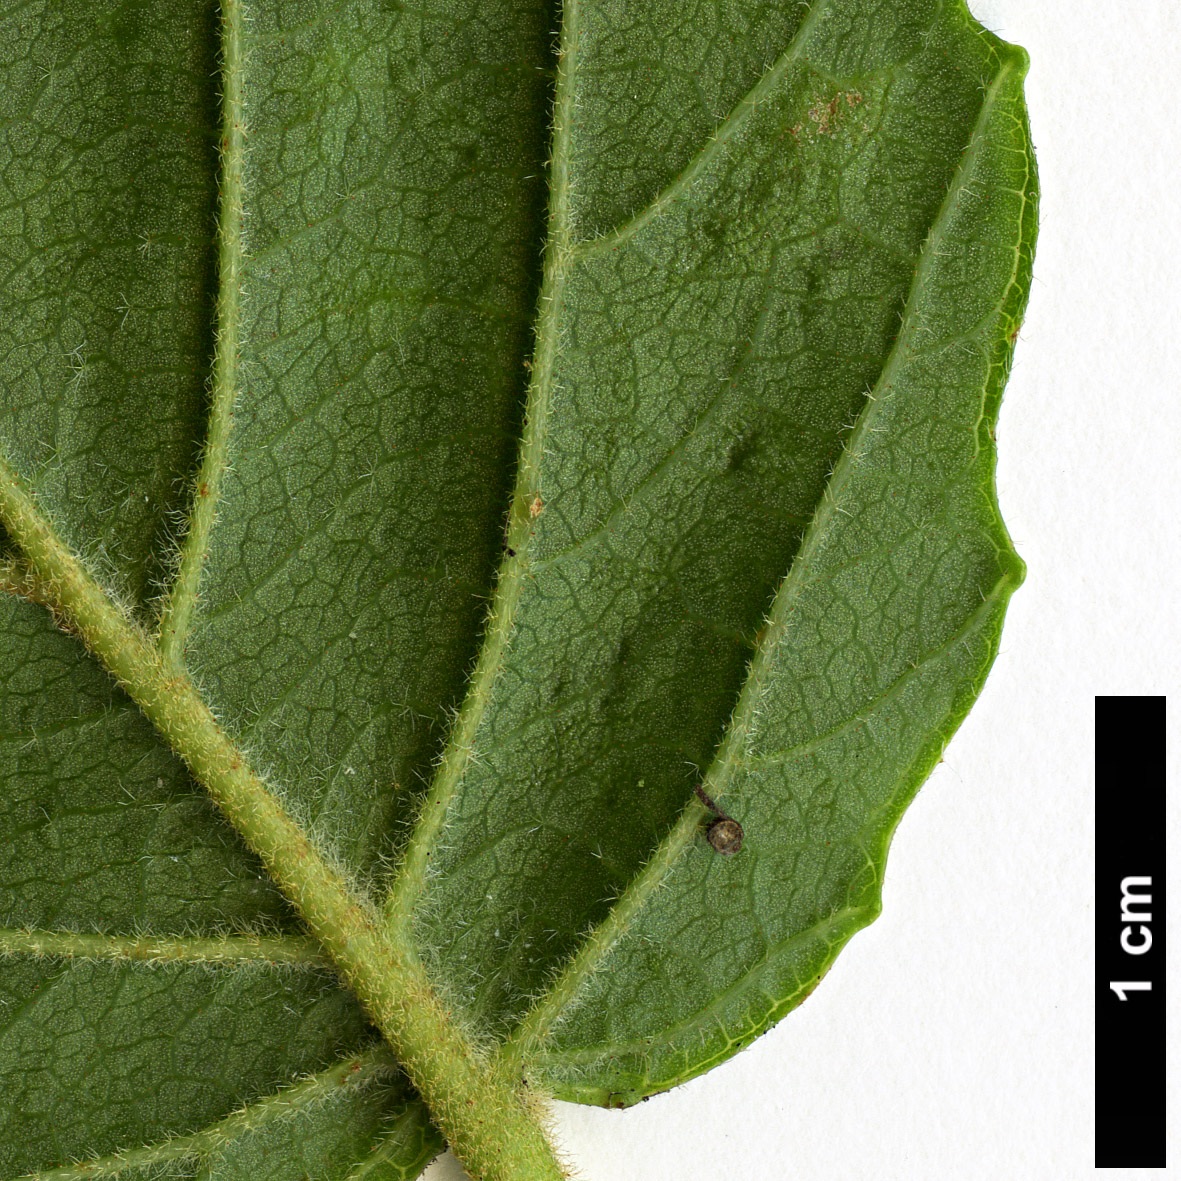 High resolution image: Family: Adoxaceae - Genus: Viburnum - Taxon: bracteatum - SpeciesSub: 'Emerald Lustre'